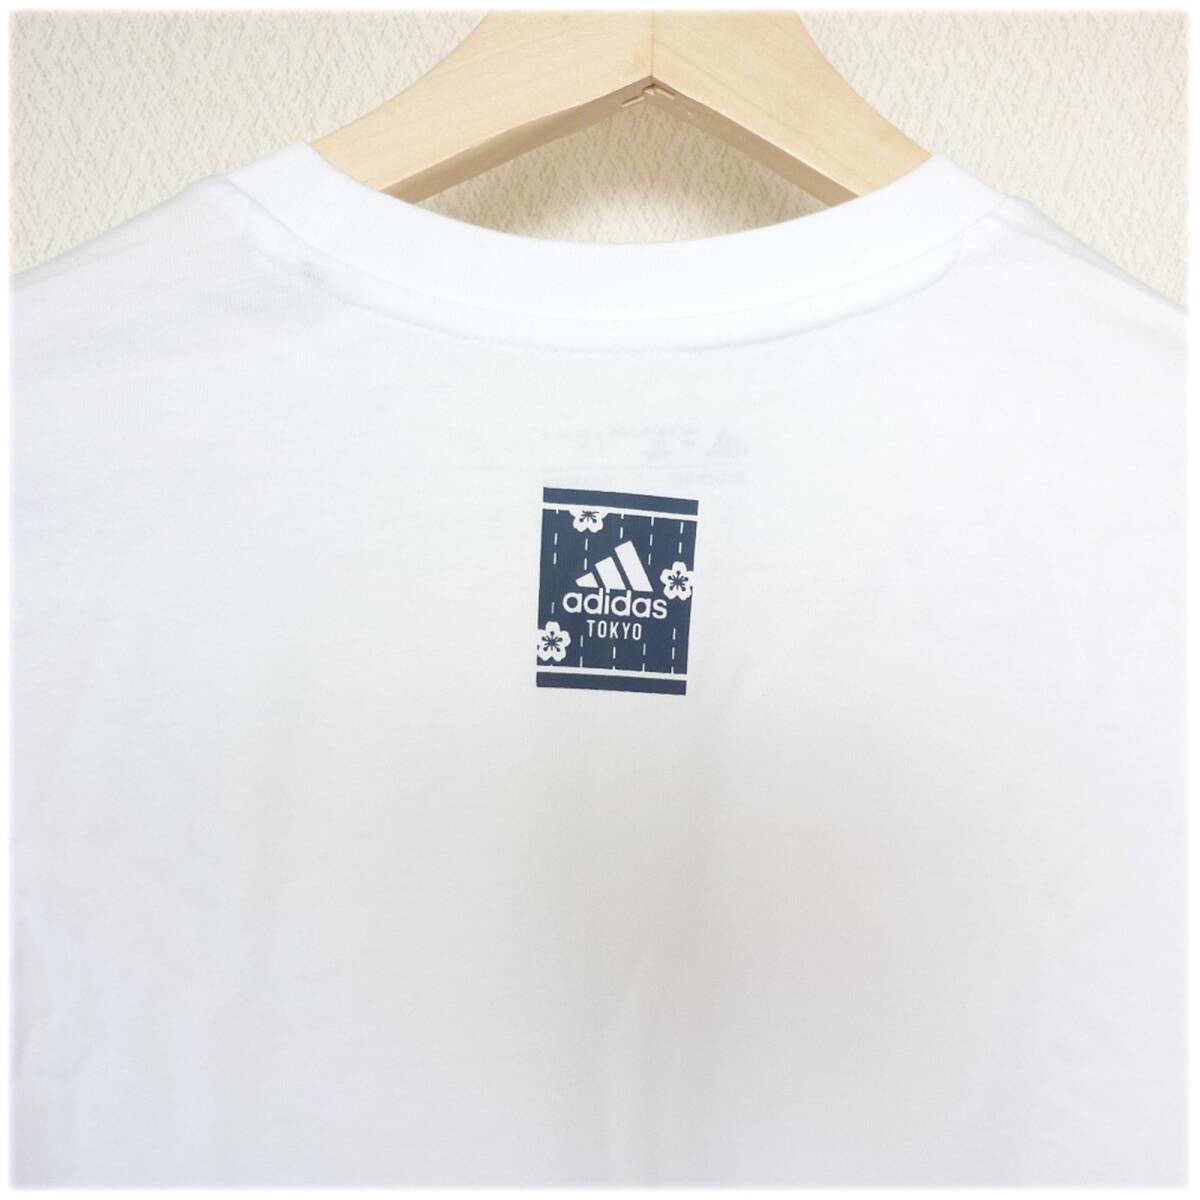  новый товар XL* Adidas adidas белый графика Logo long T/ мужской футболка с длинным рукавом белый / хлопок / хлопок 